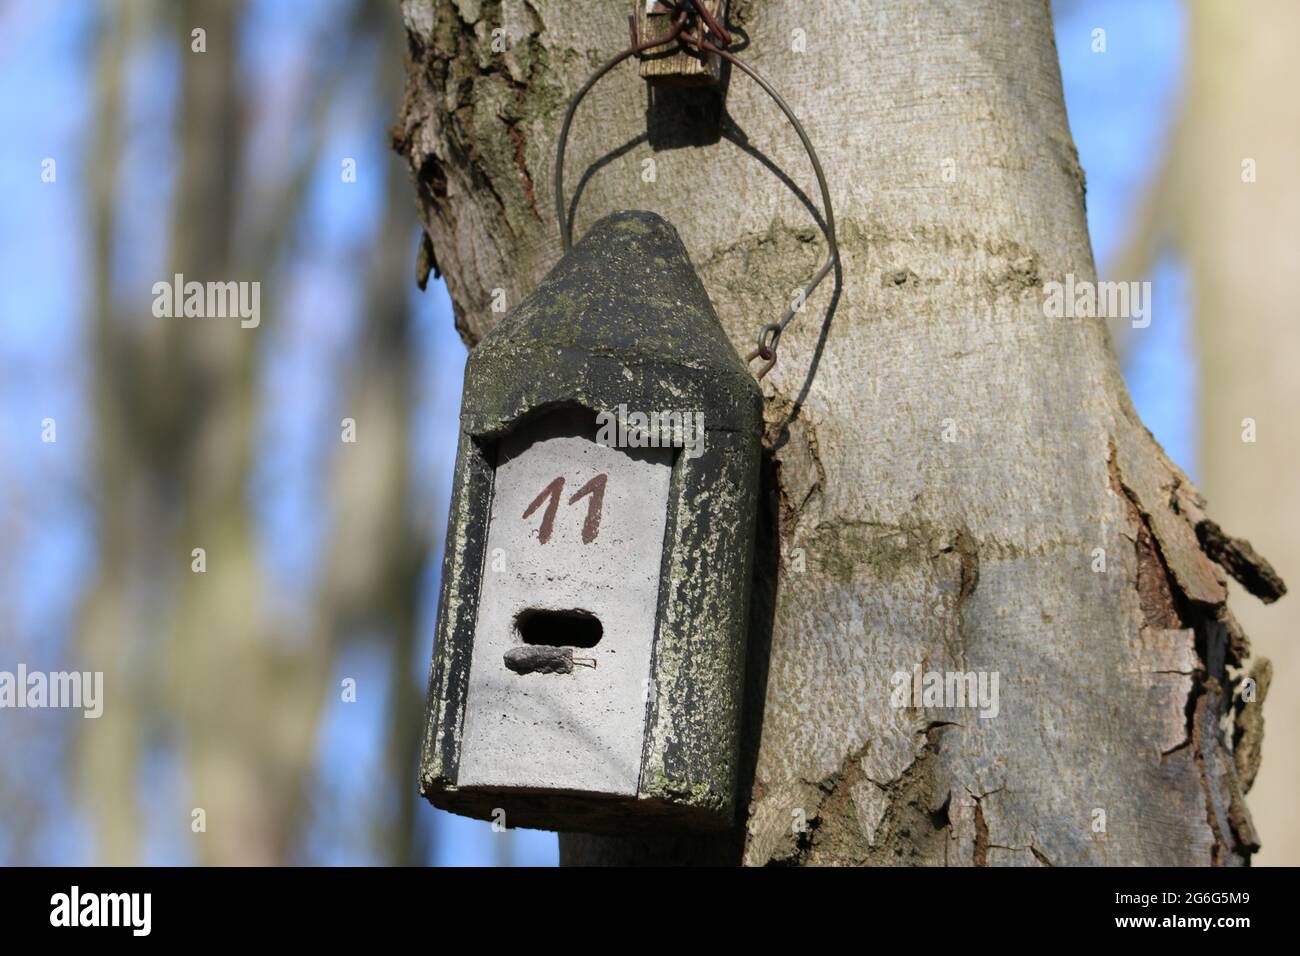 Boîte de nidification artificielle de chauve-souris sur un tronc d'arbre, Allemagne Banque D'Images